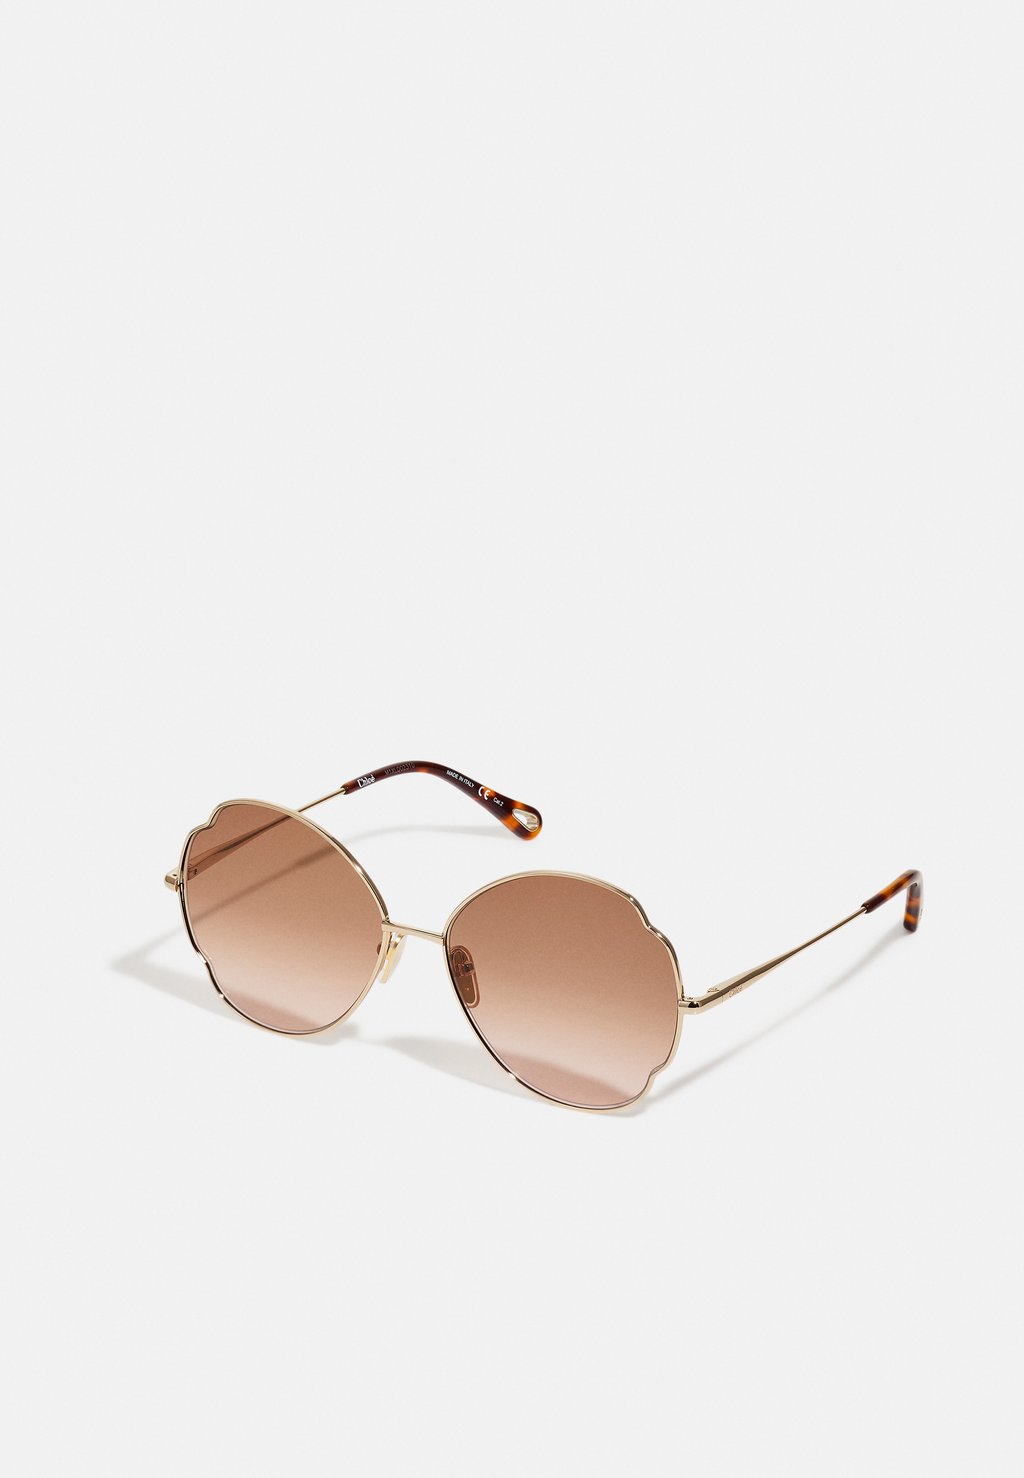 Солнцезащитные очки CHLOÉ, золотисто-золотисто-коричневые солнцезащитные очки lewis 8515 золотисто коричневые